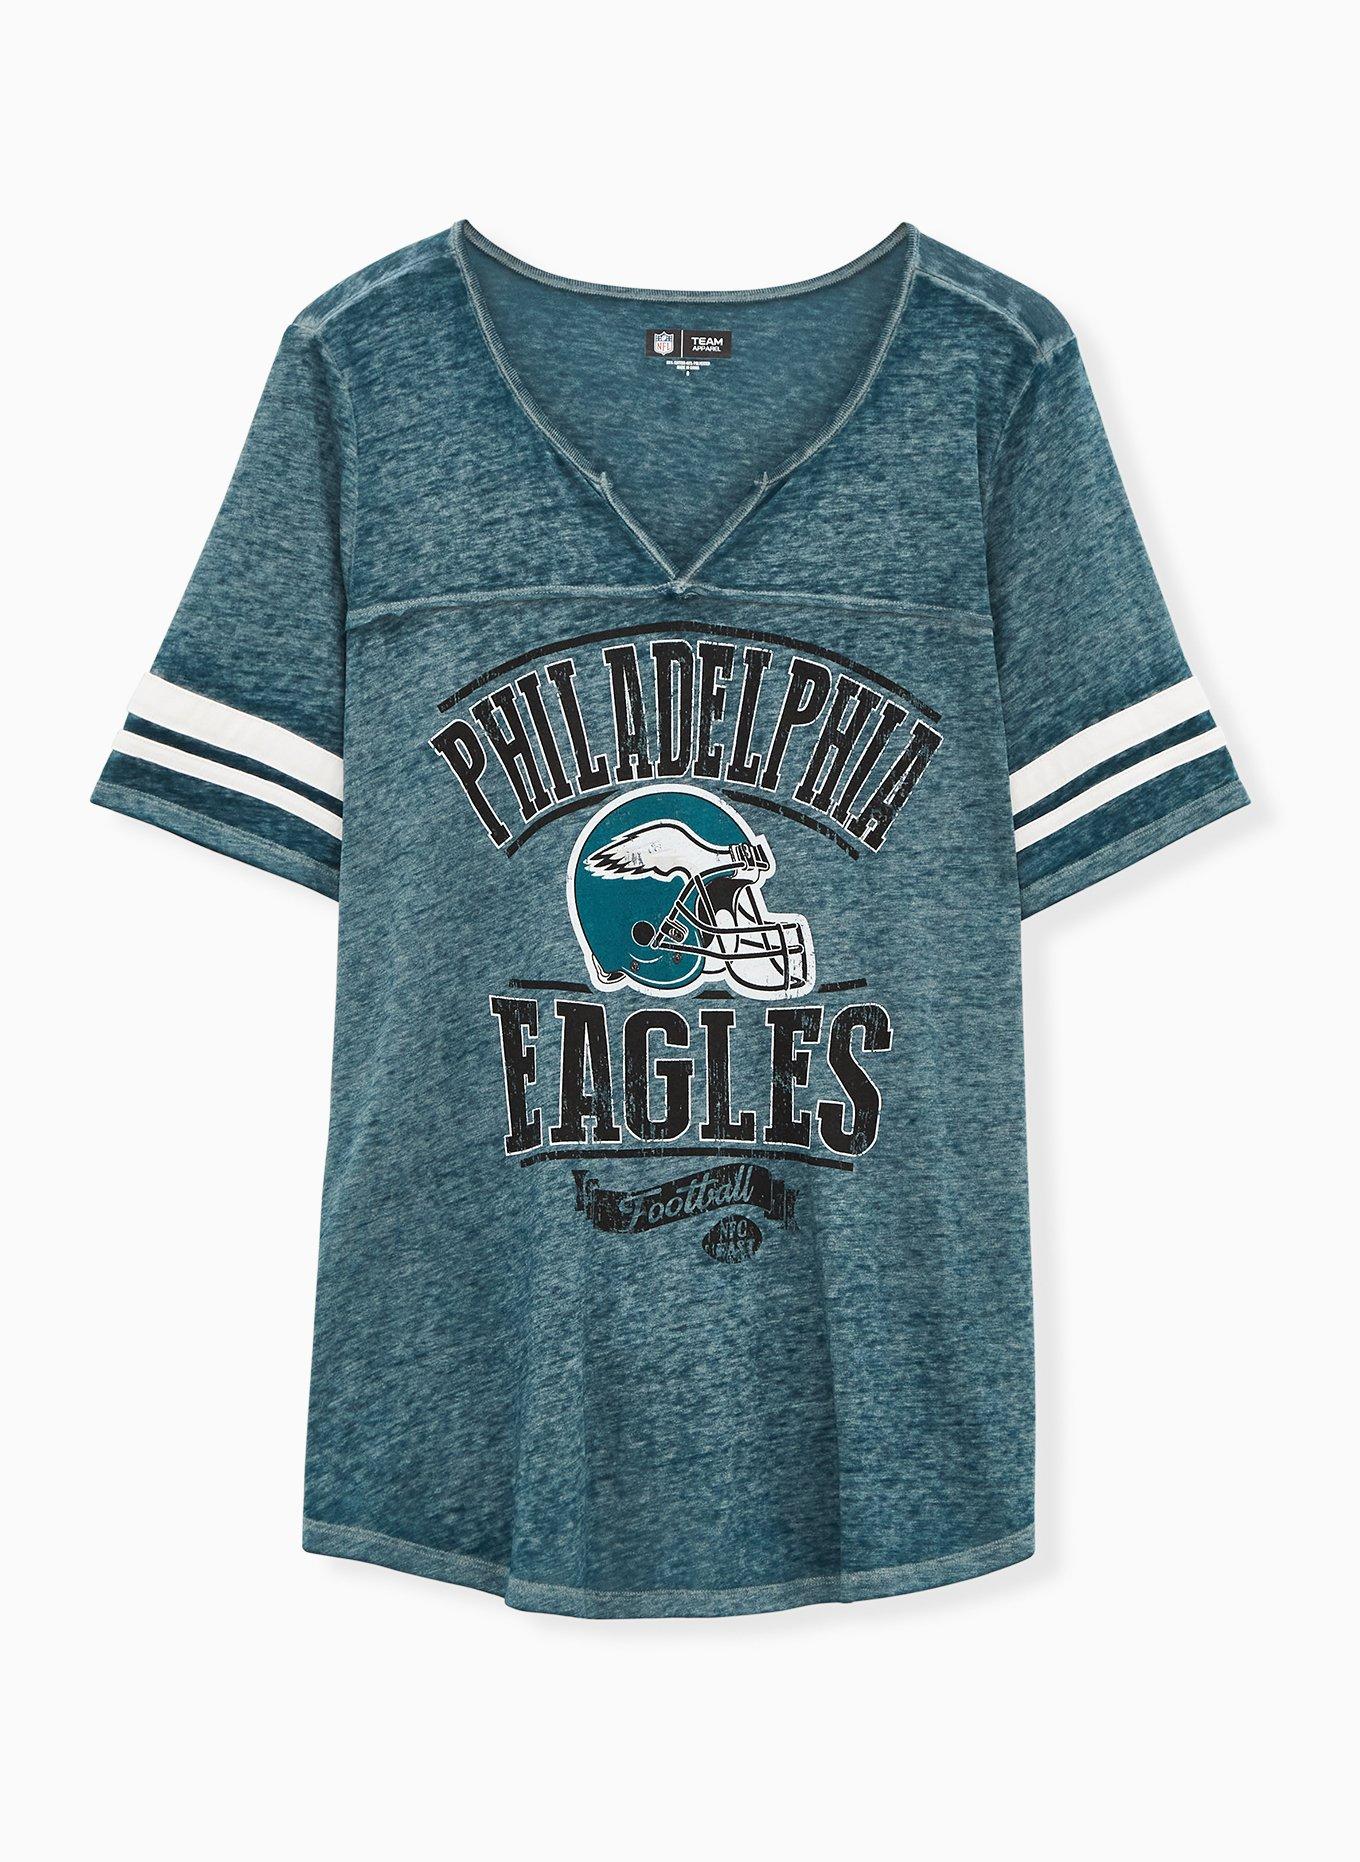 Vintage Philadelphia Eagles T-shirt M -  Hong Kong